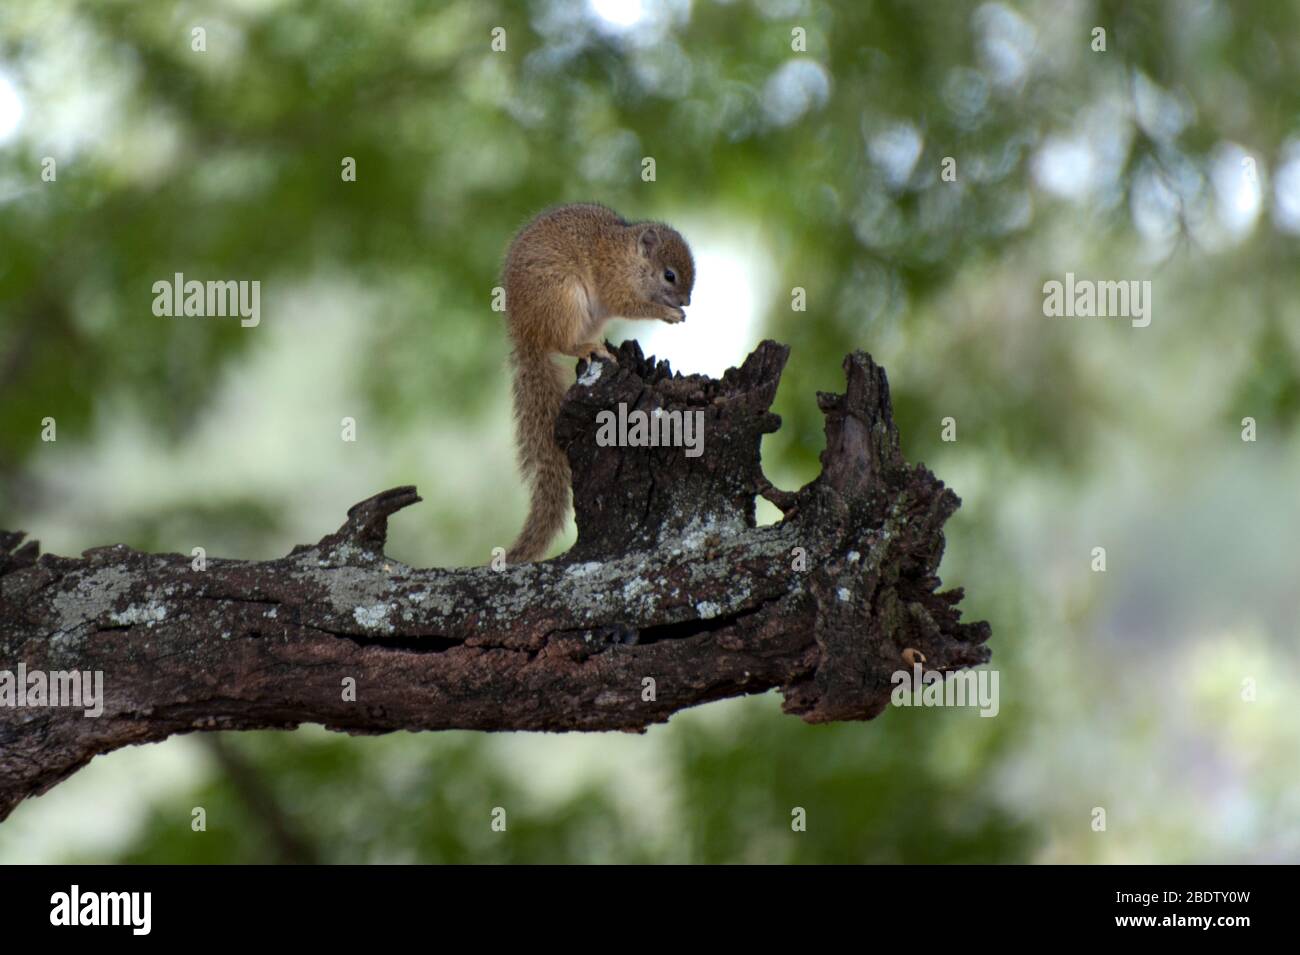 Écureuil terrestre, Xerus inauris, manger sur place, Parc national Kruger, province de Mpumalanga,Afrique du Sud, Afrique Banque D'Images